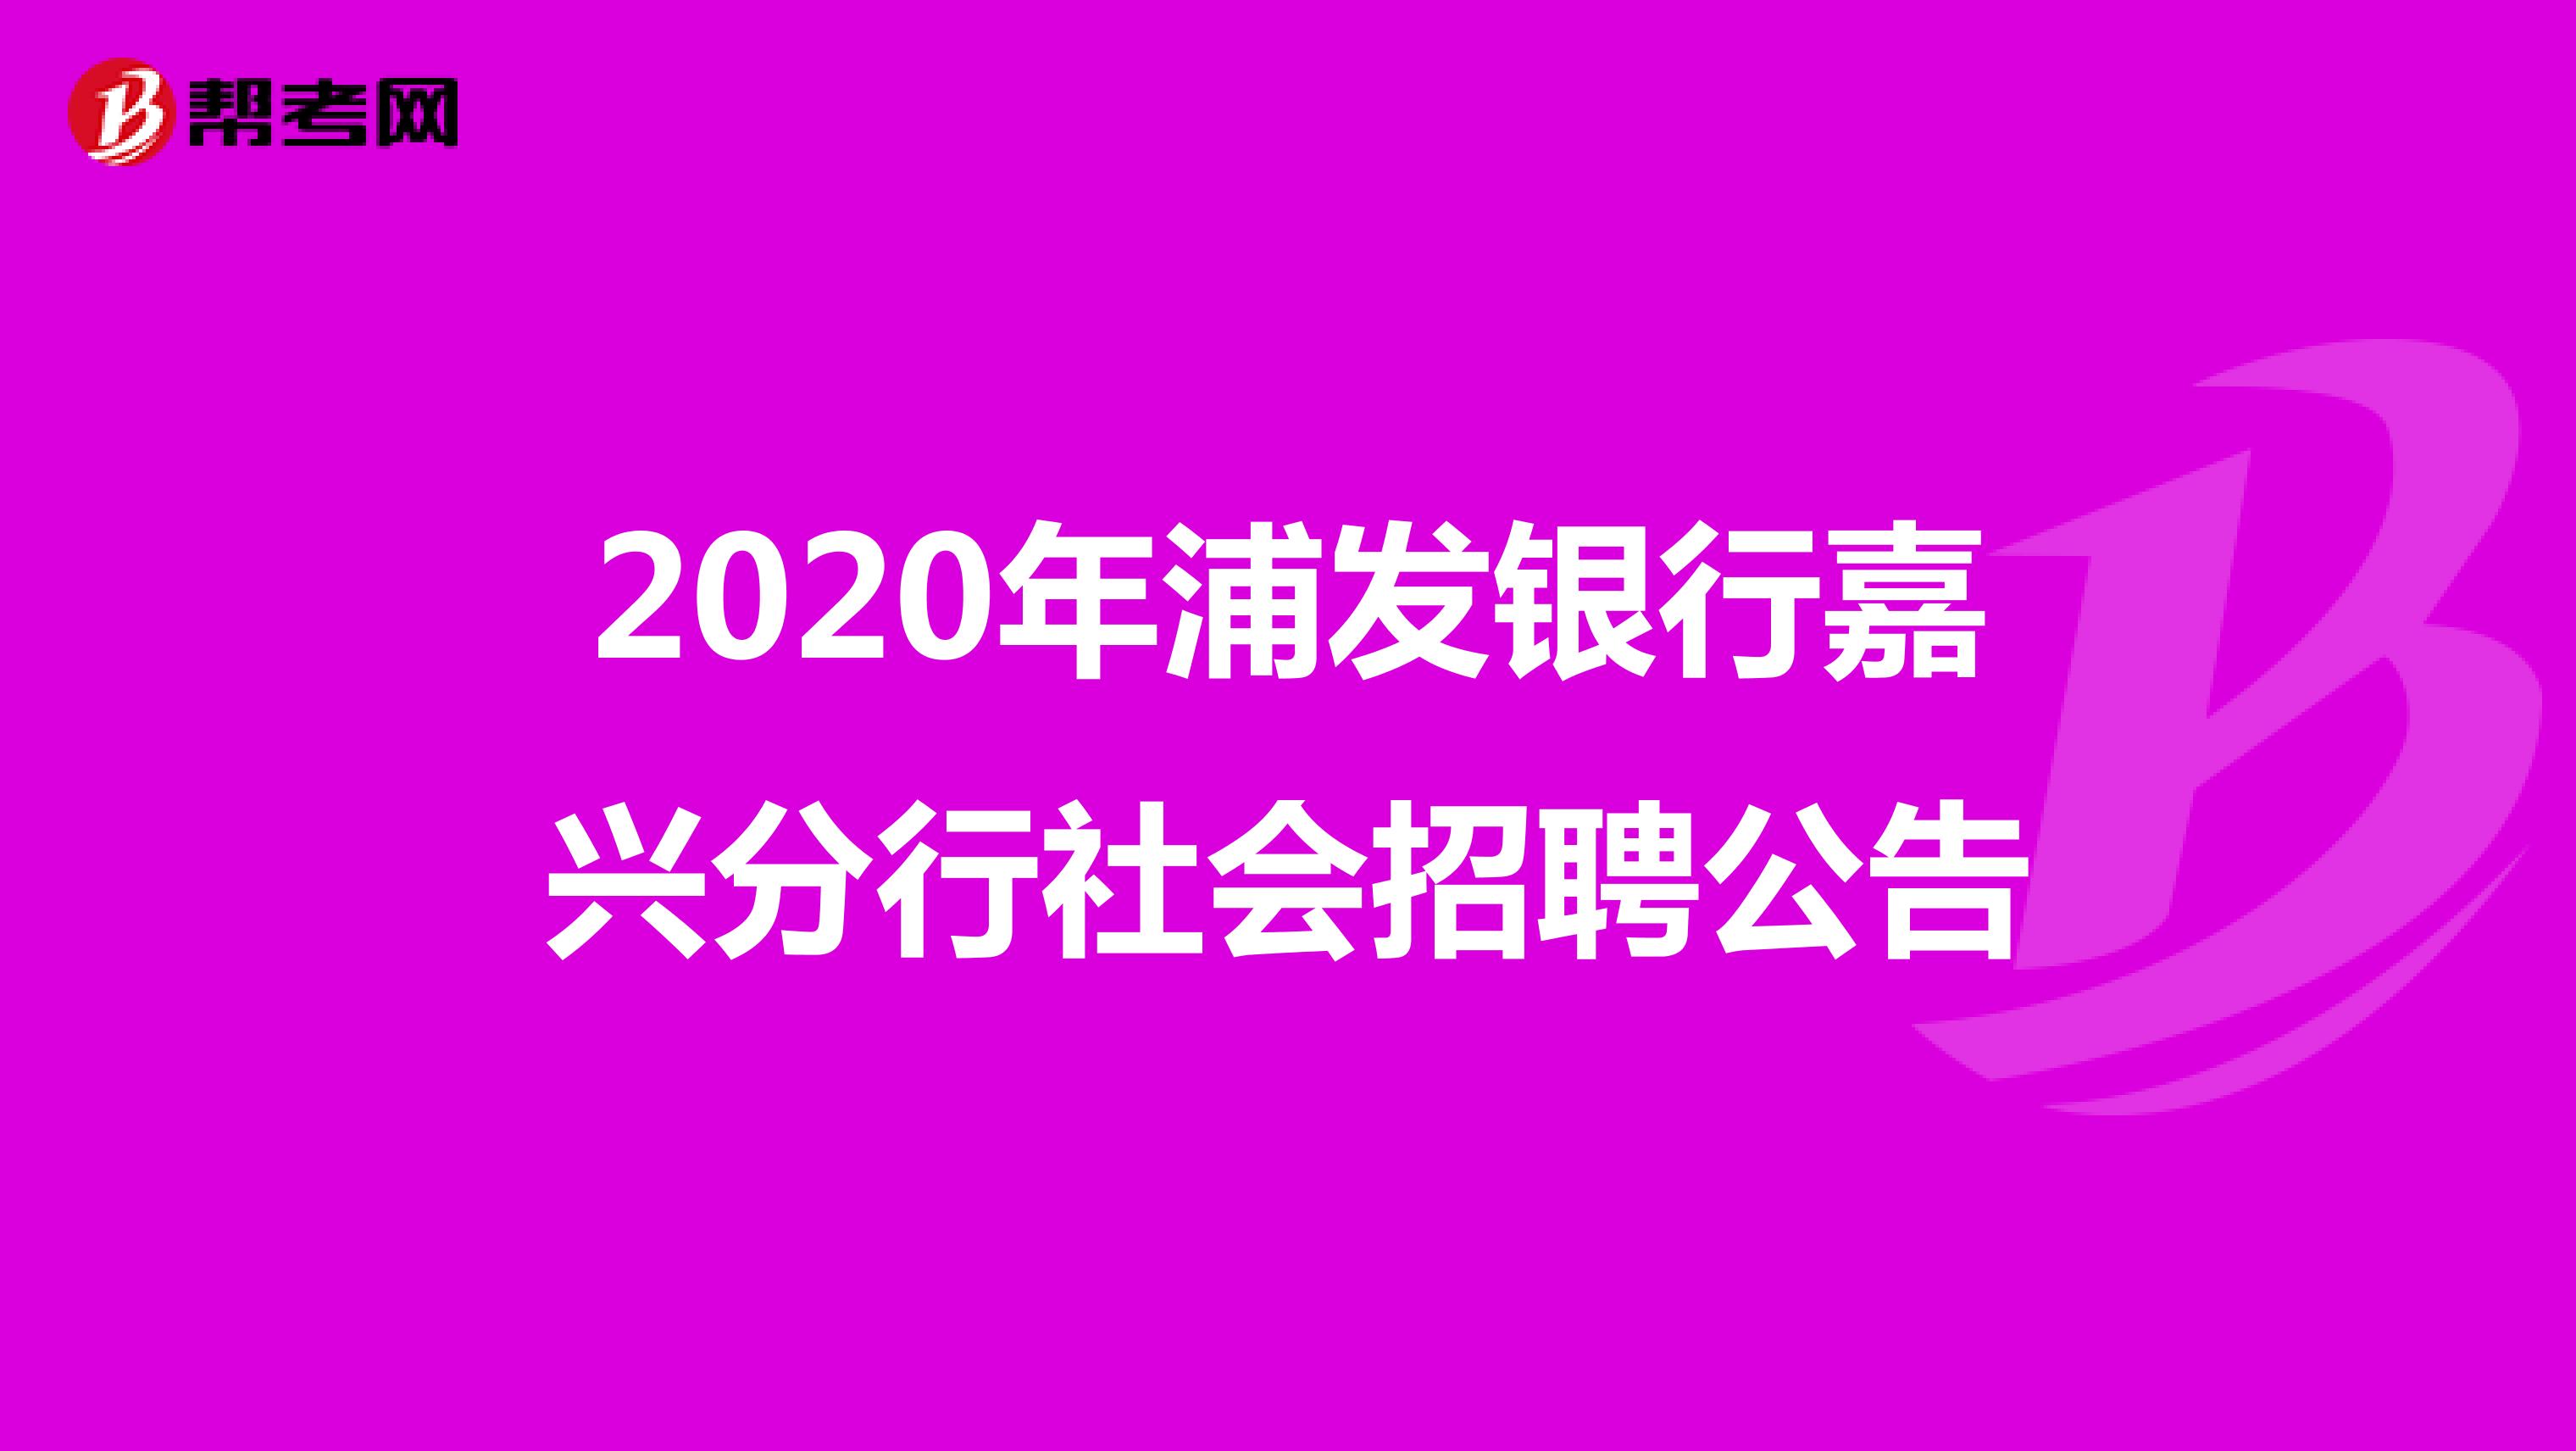 2020年浦发银行嘉兴分行社会招聘公告